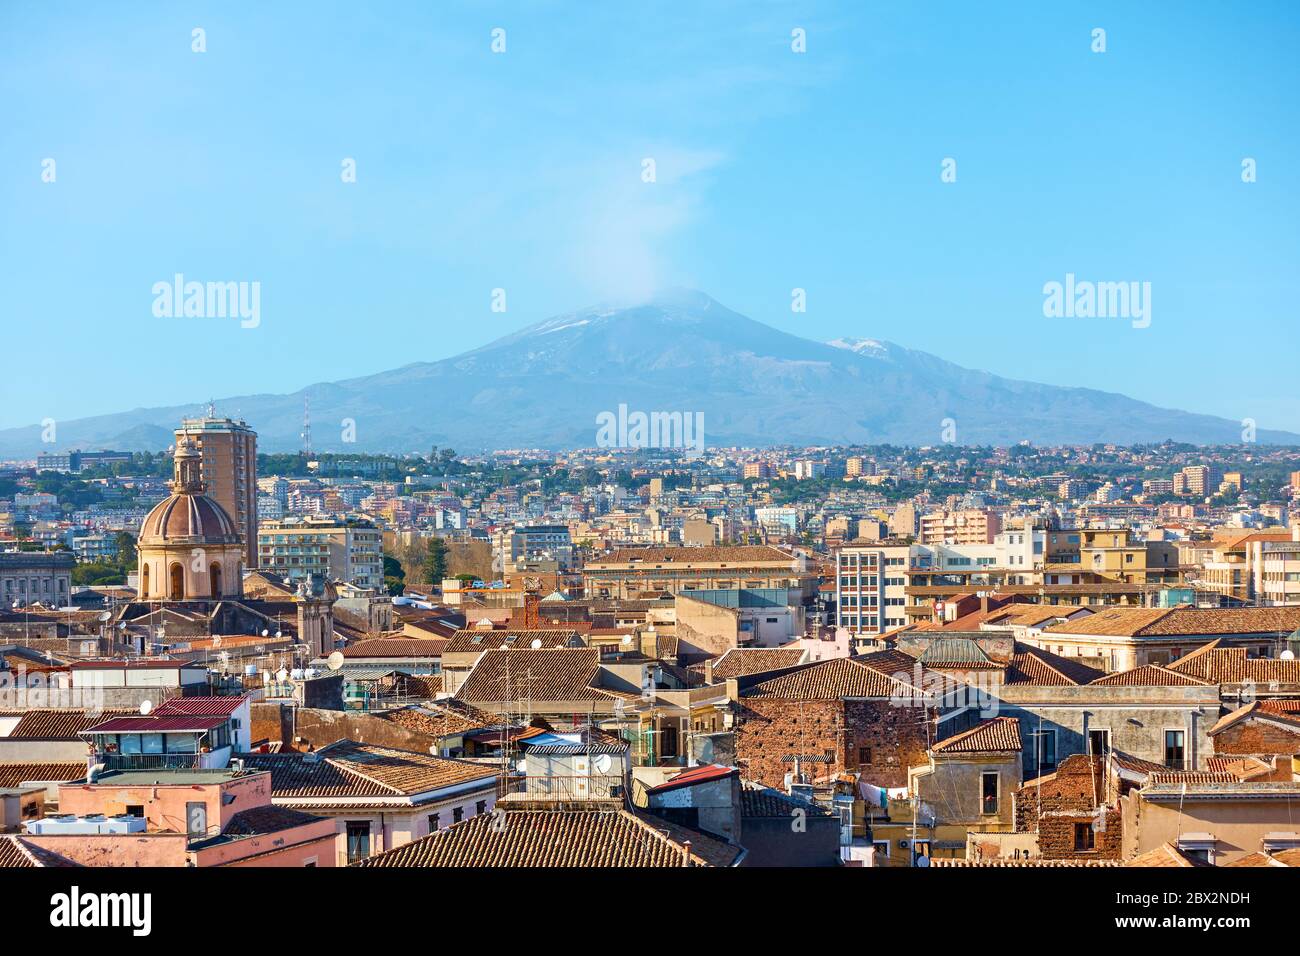 Tetti del centro storico di Catania e il vulcano Etna fumante, Sicilia, Italia Foto Stock